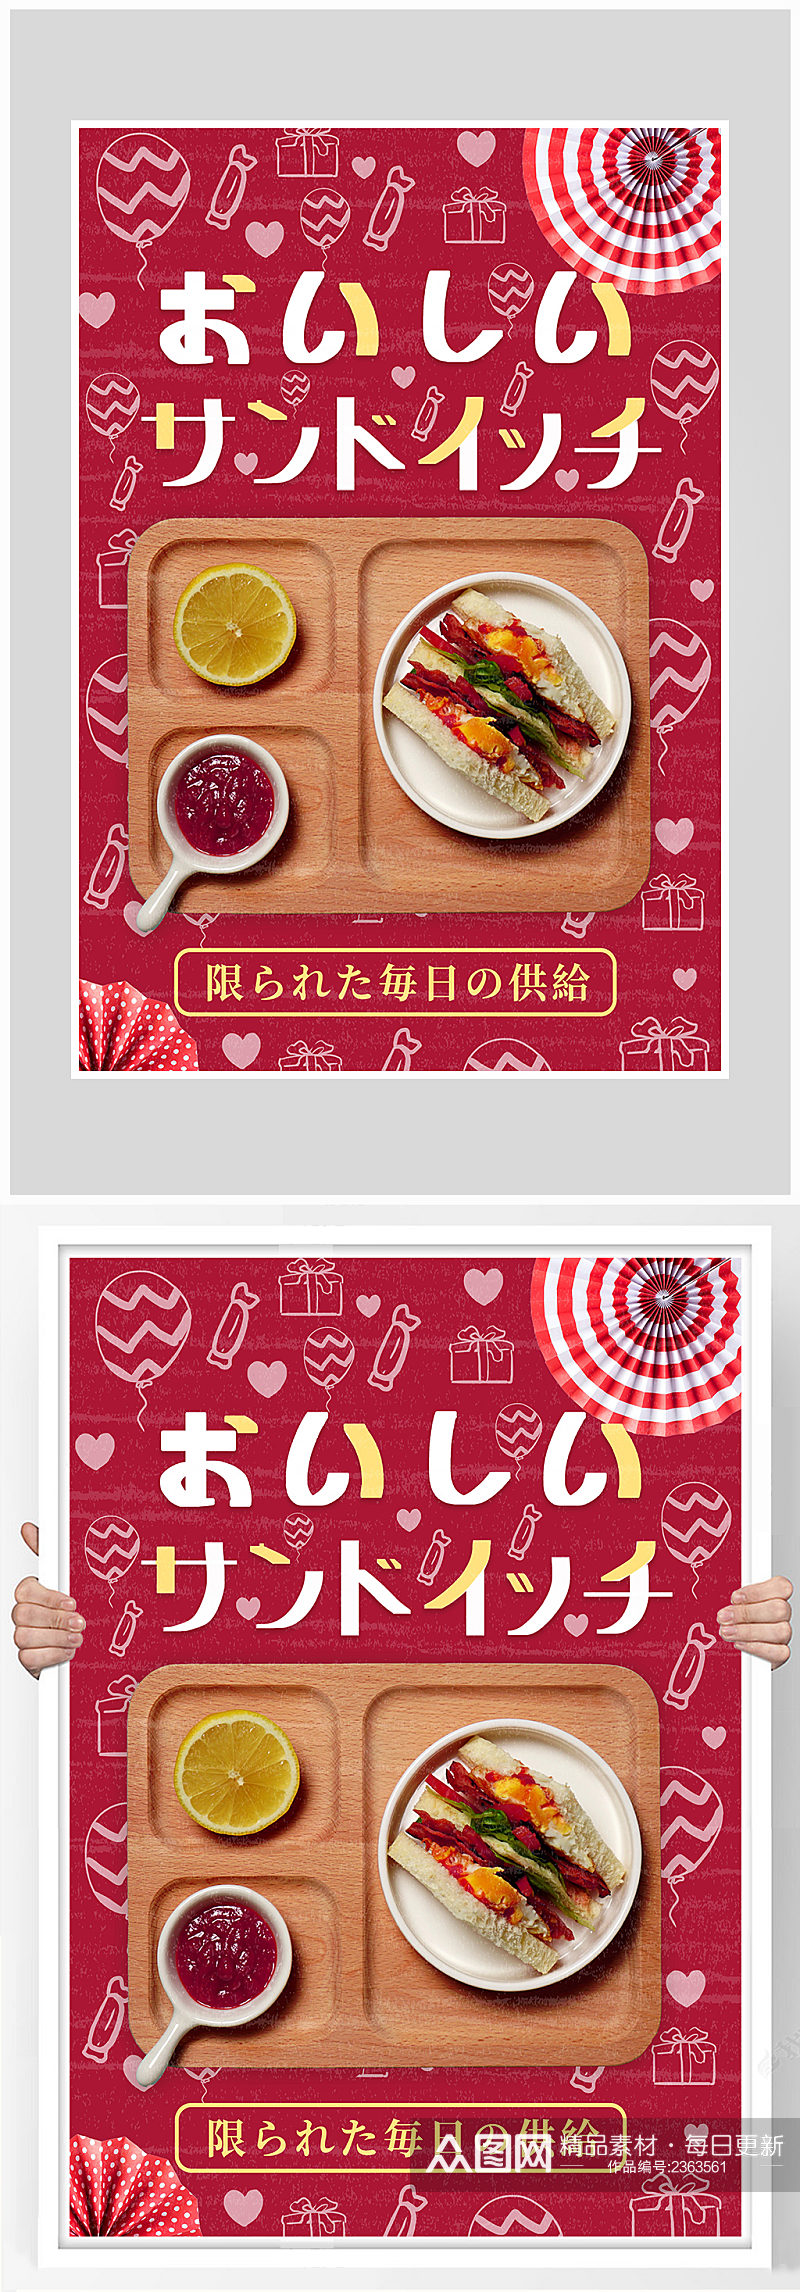 创意质感红色美食海报设计素材